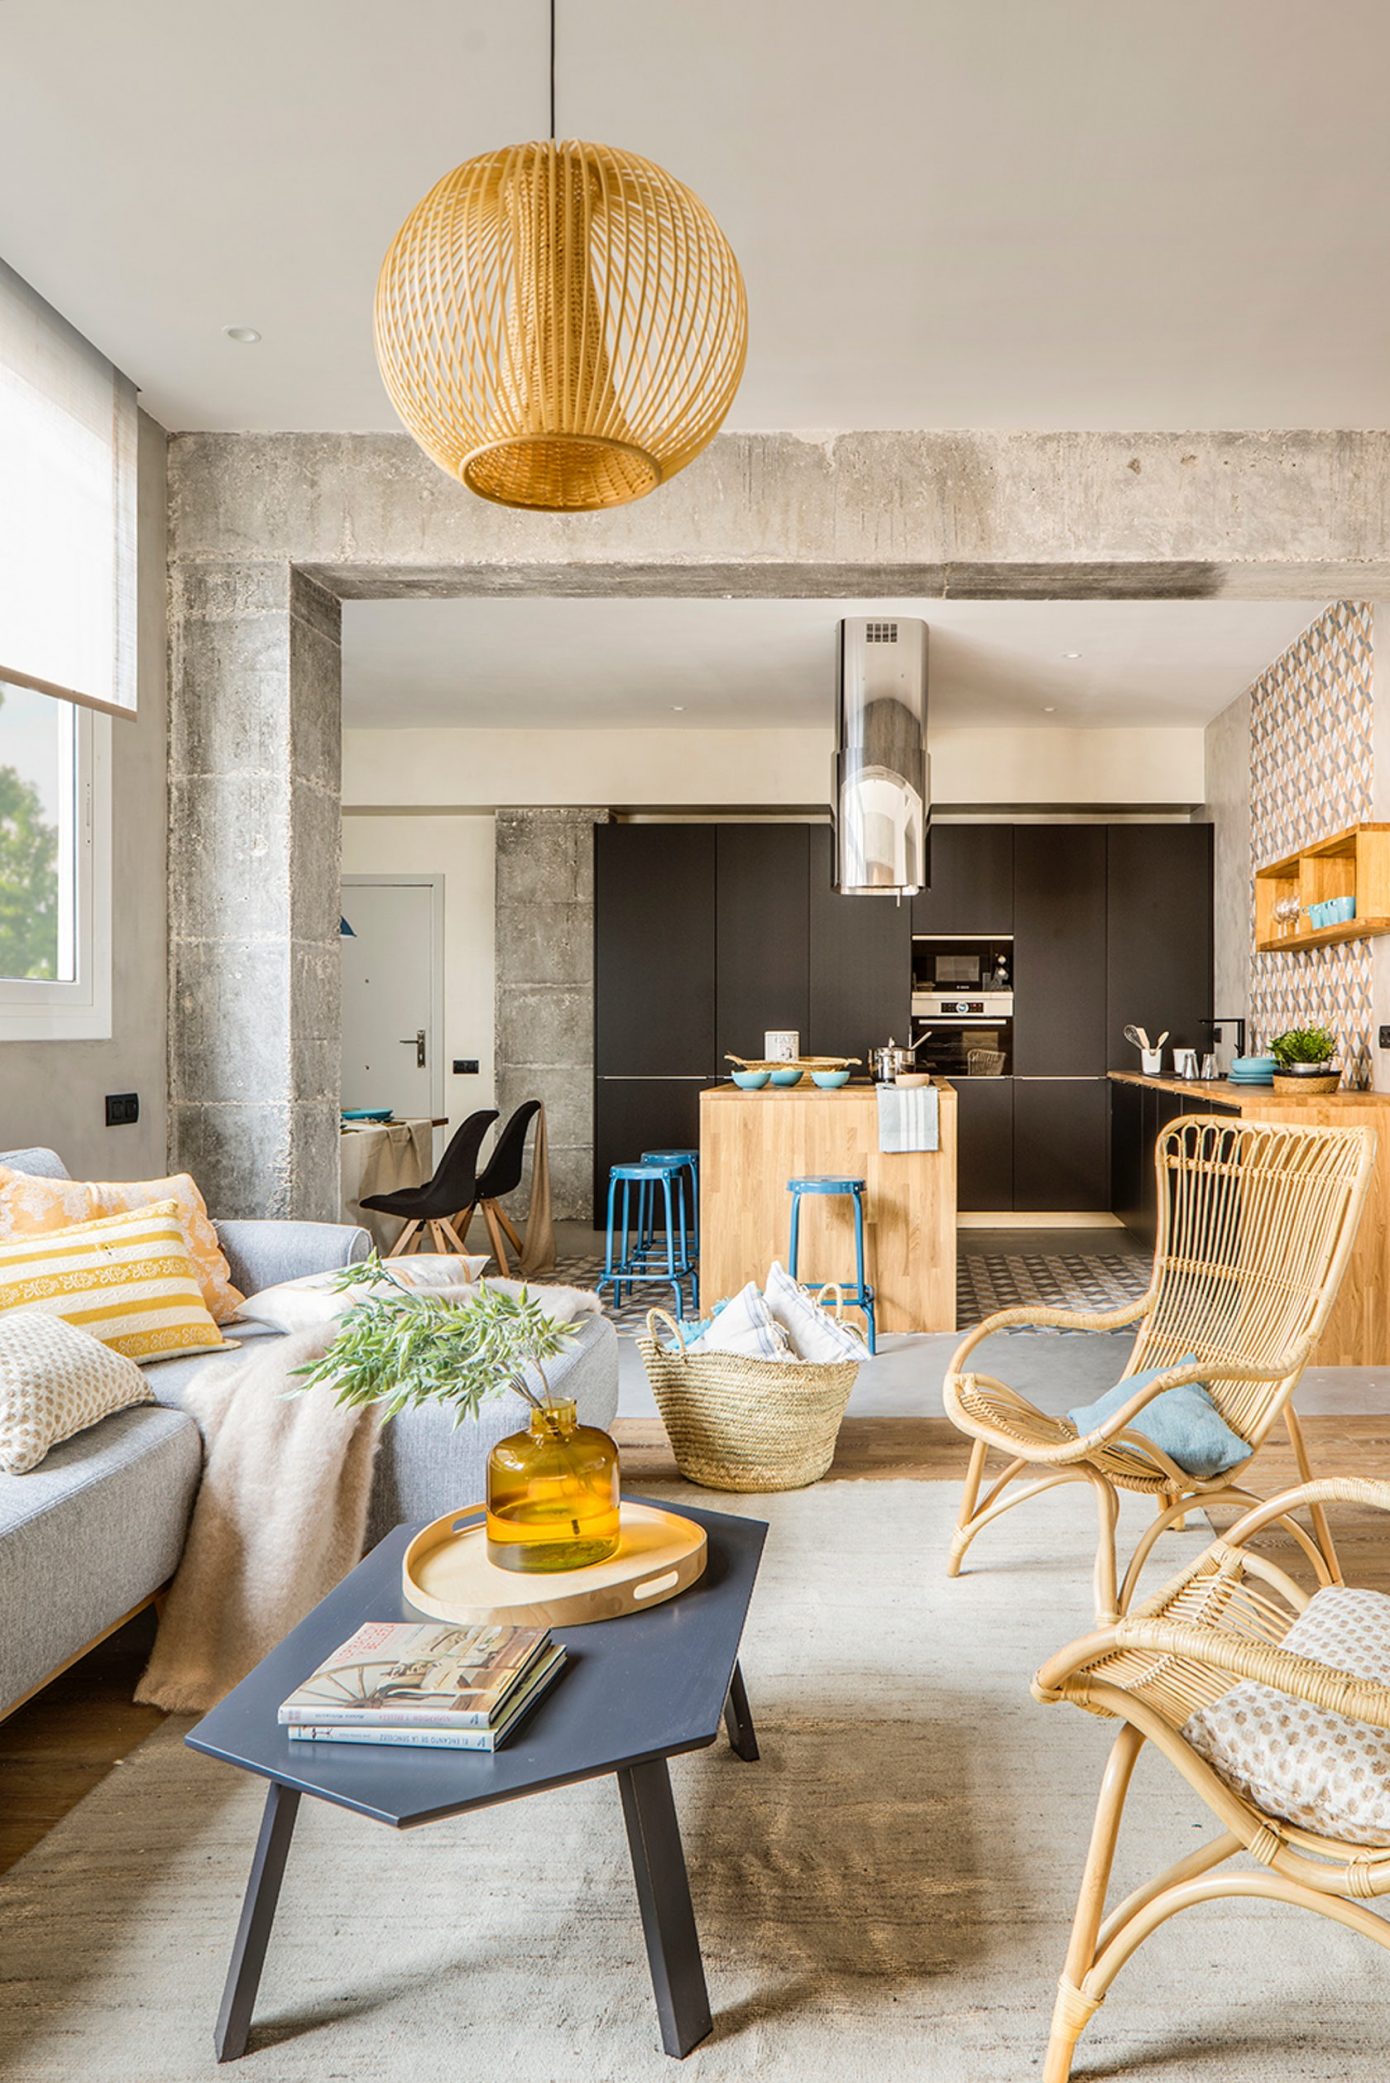 Apartment in Barcelona by Egue y Seta